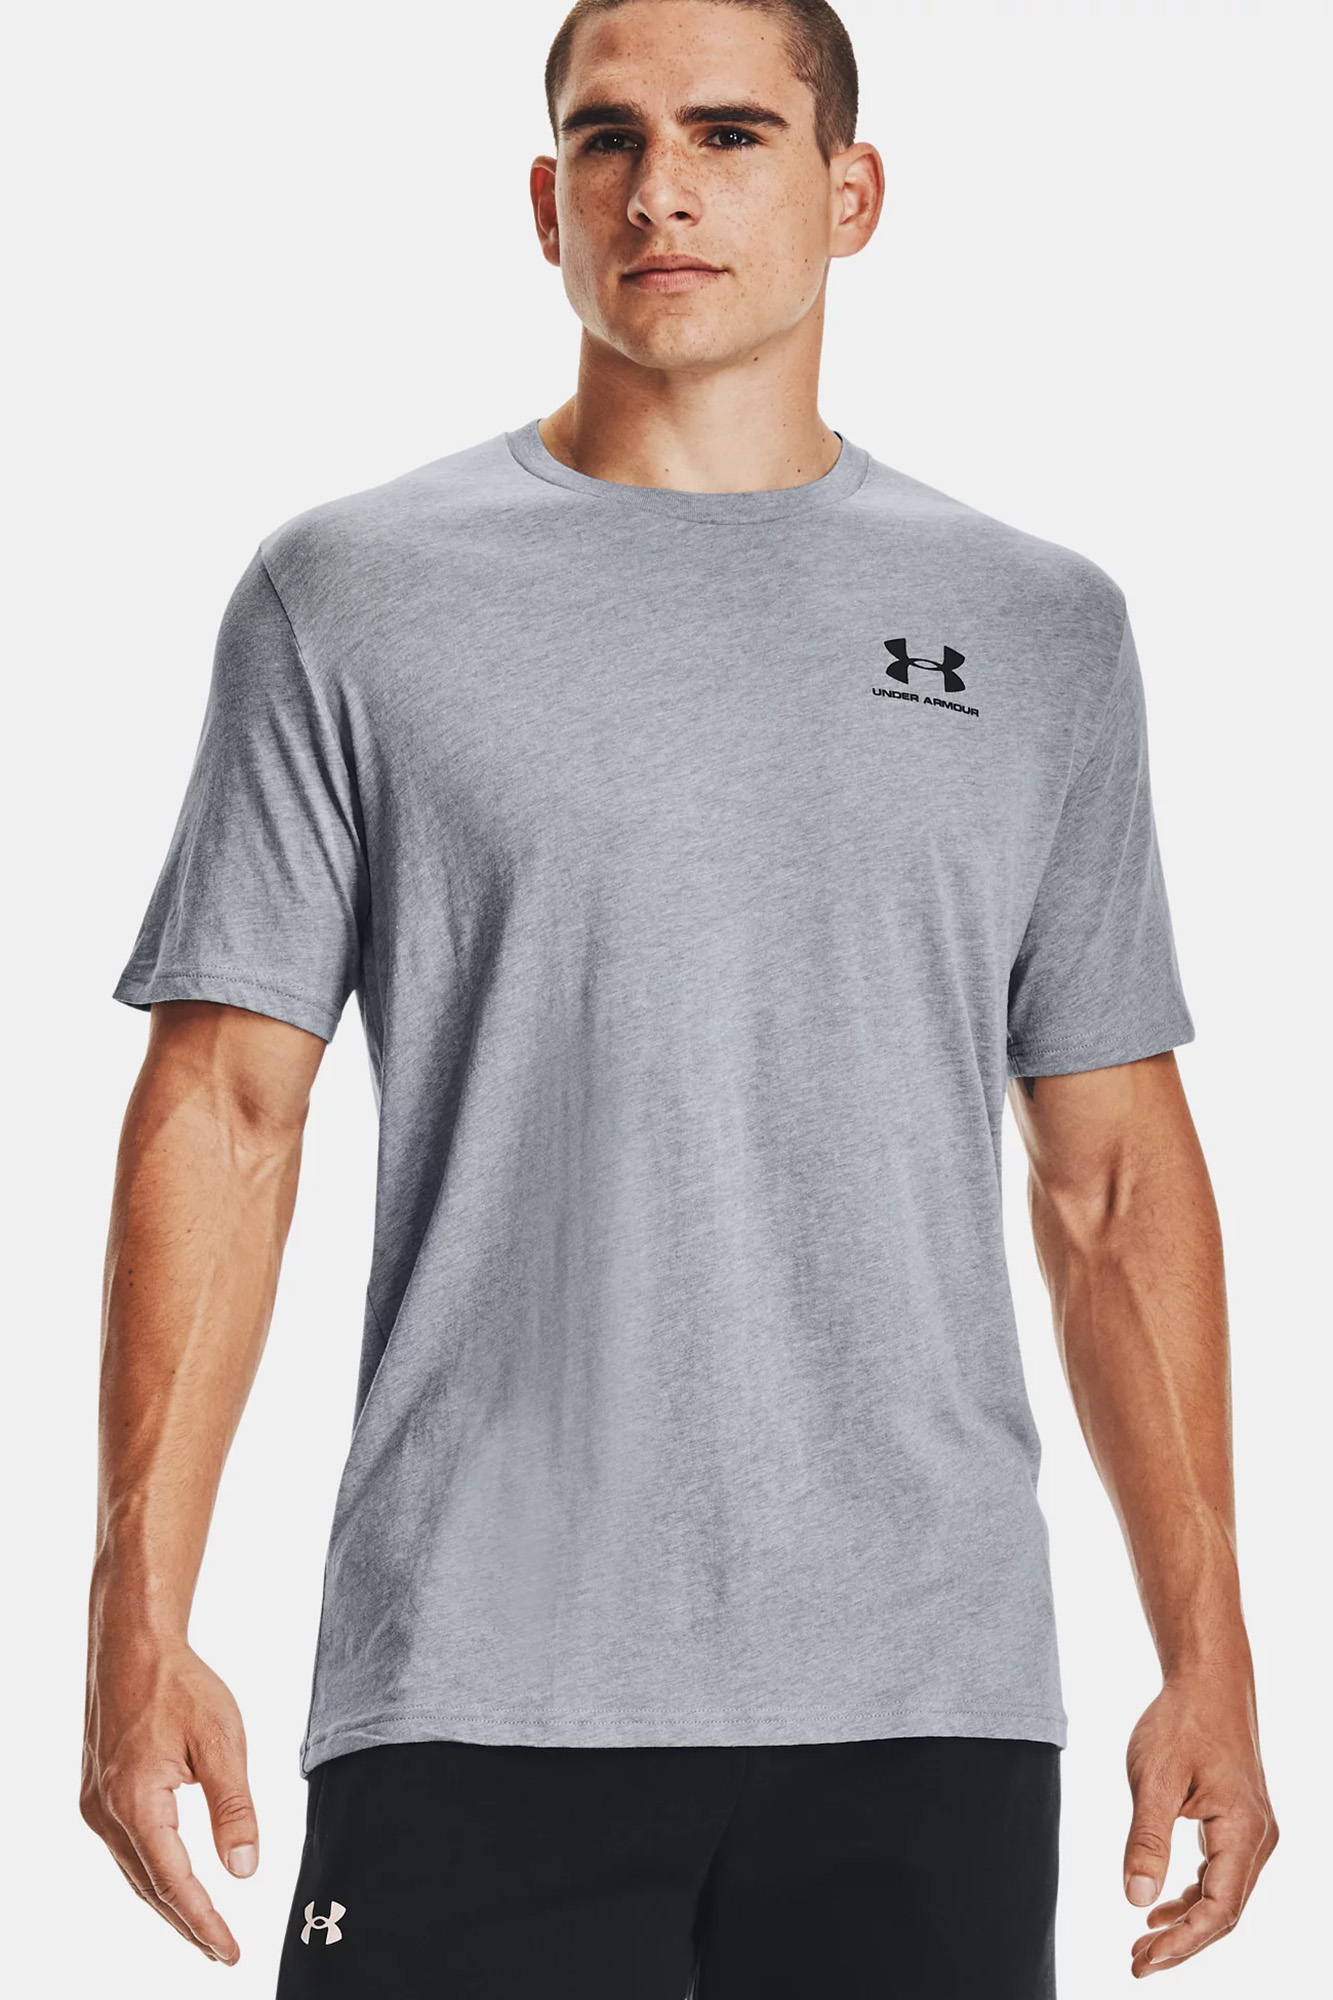 Camisetas Under Armour para Hombre en Rebajas - Outlet Online